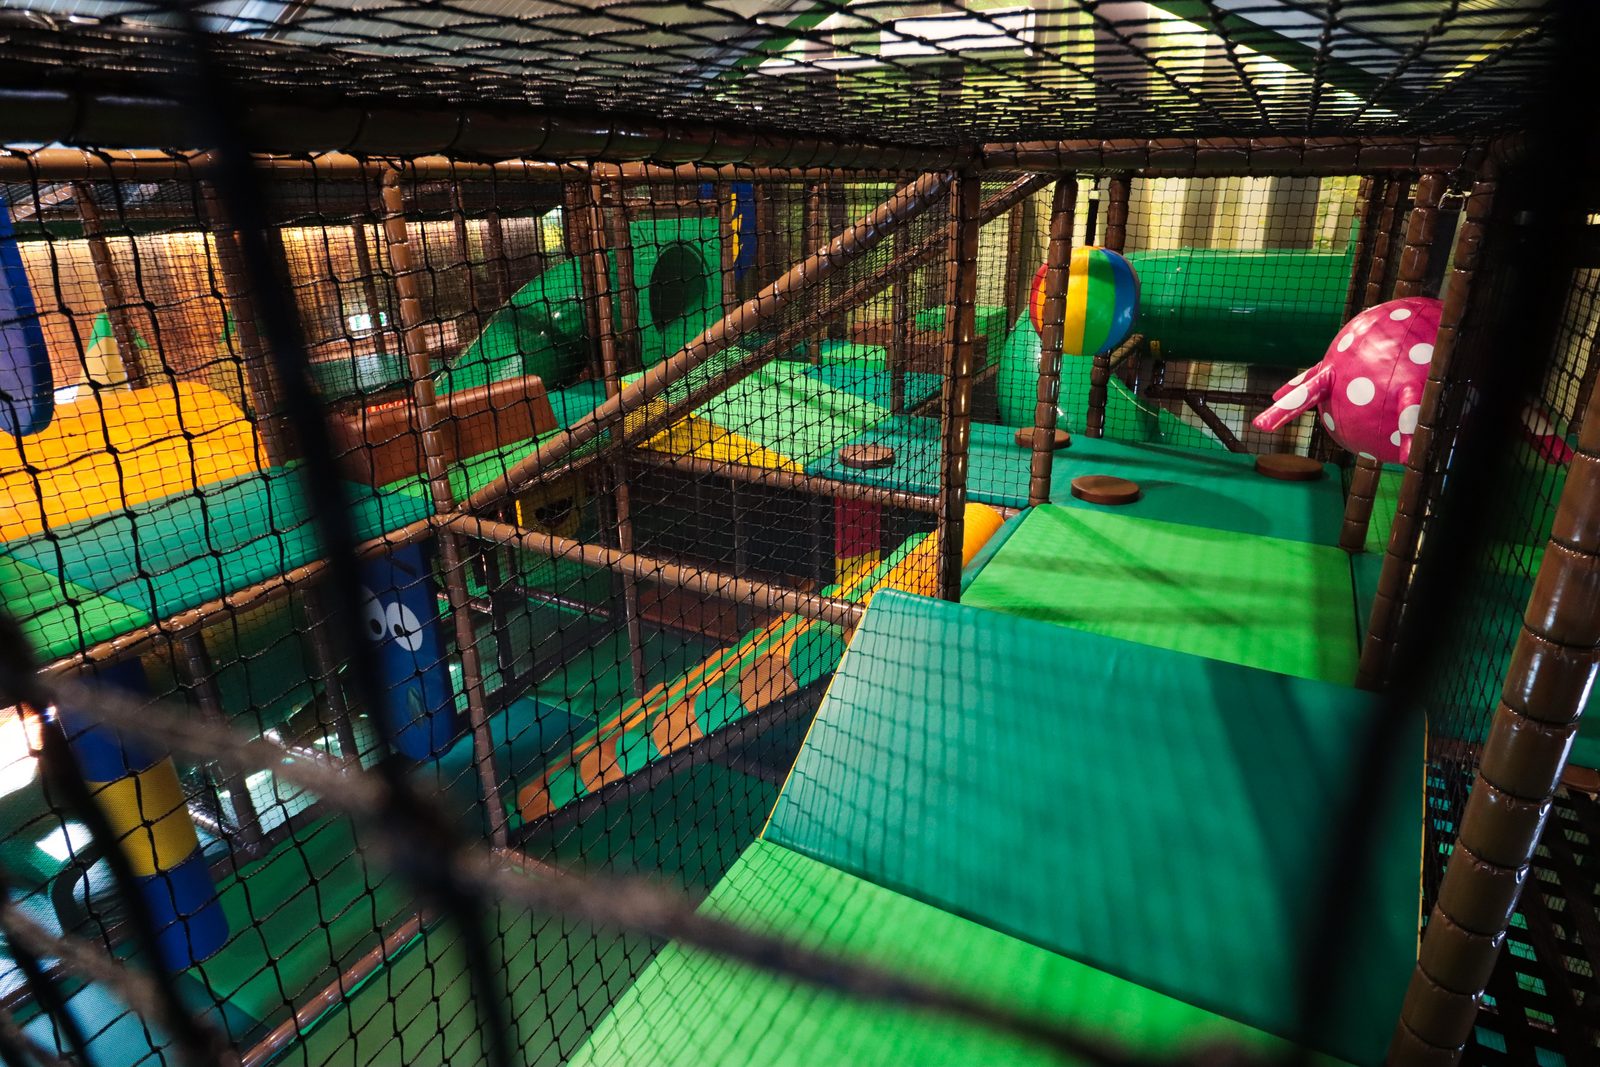 Indoor playground: 'Bie de speelgroeve'